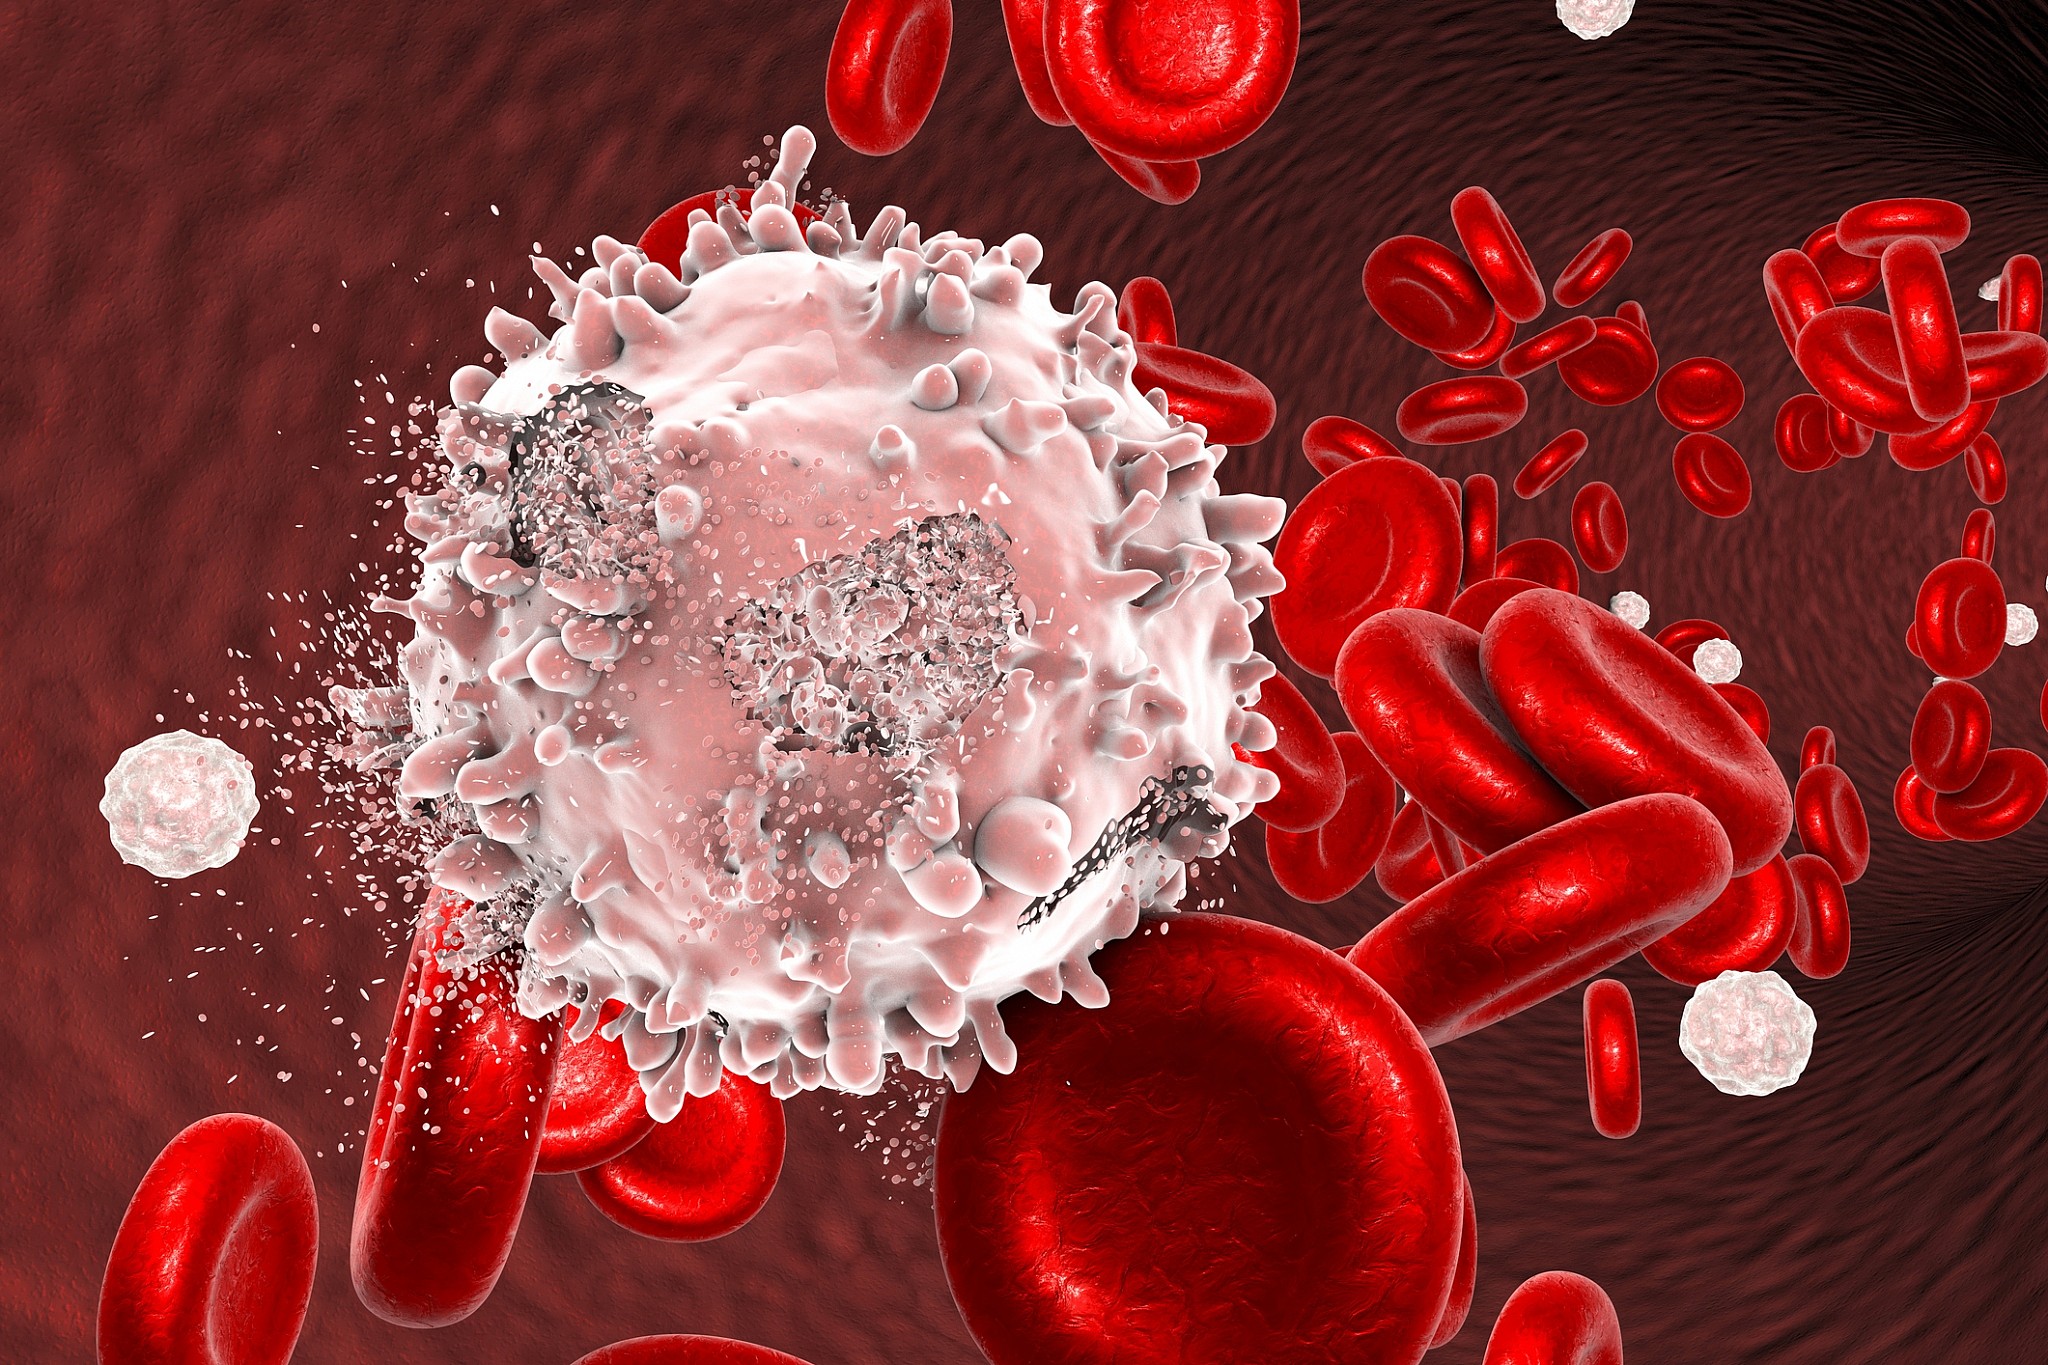 Tìm hiểu về bệnh ung thư máu ở trẻ em sống được bao lâu để chẩn đoán bệnh